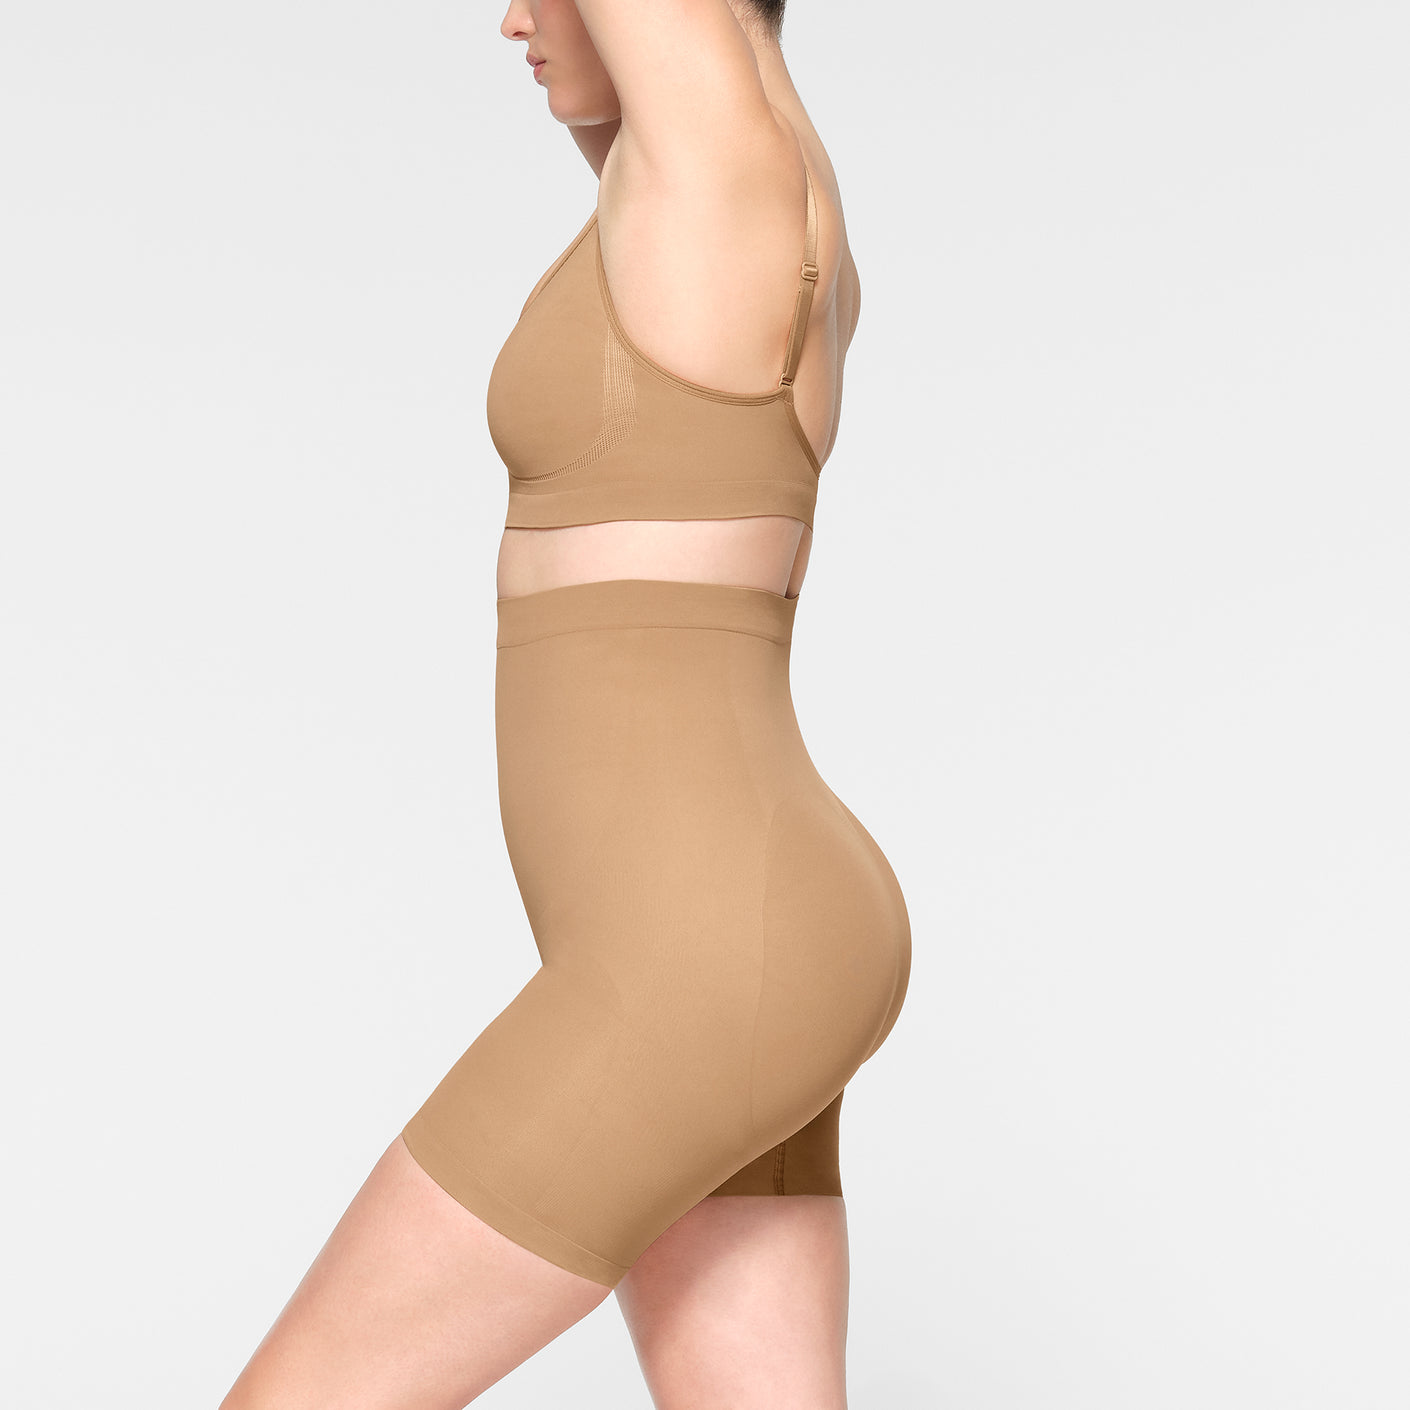 MISS MOLY Bodysuit Shapewear for Women Tummy Control Shpewear One